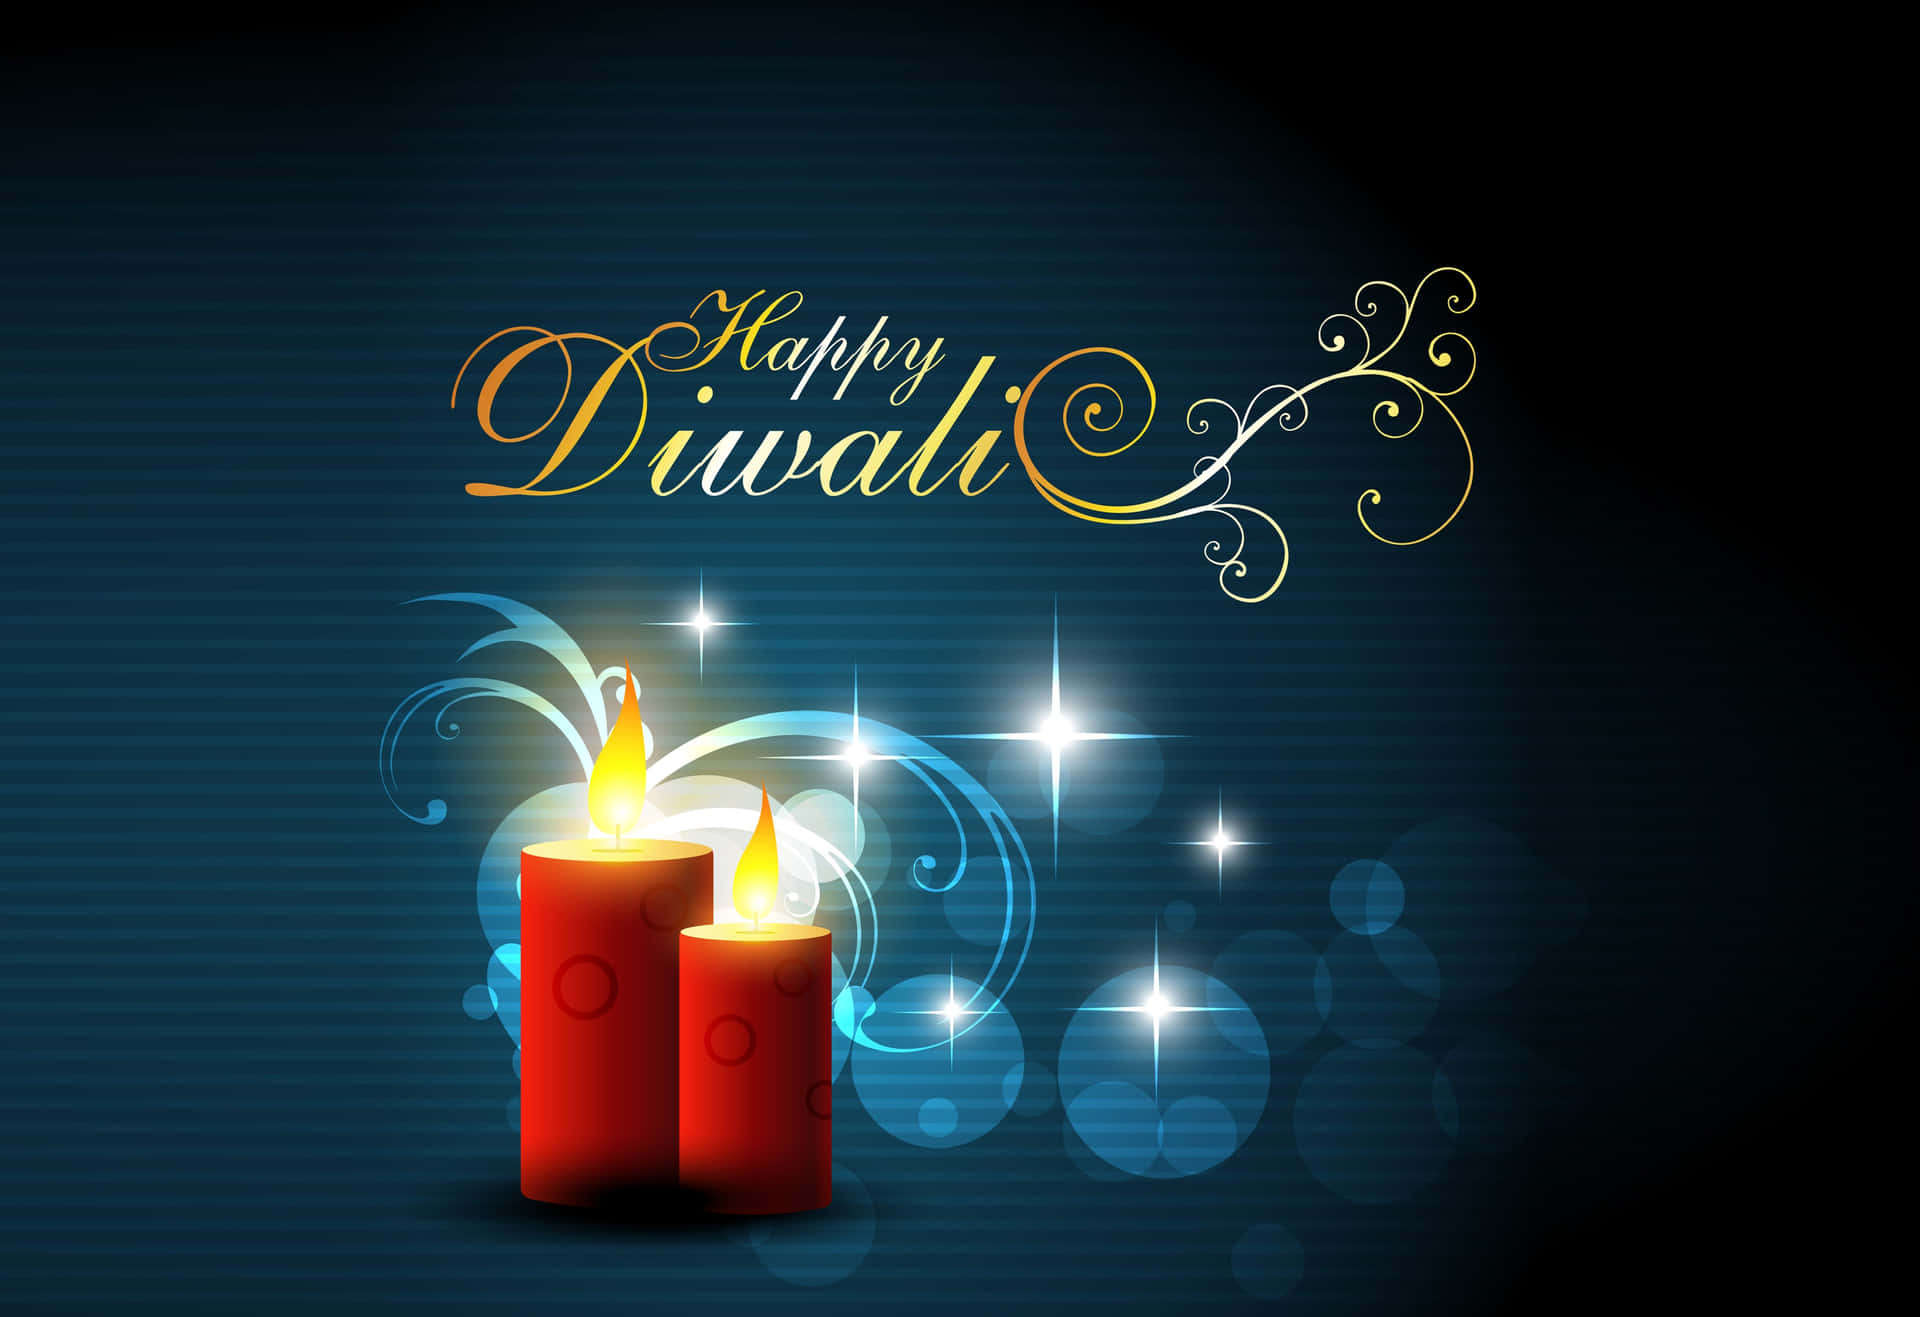 Desejandolhe Um Diwali Cheio De Alegria!